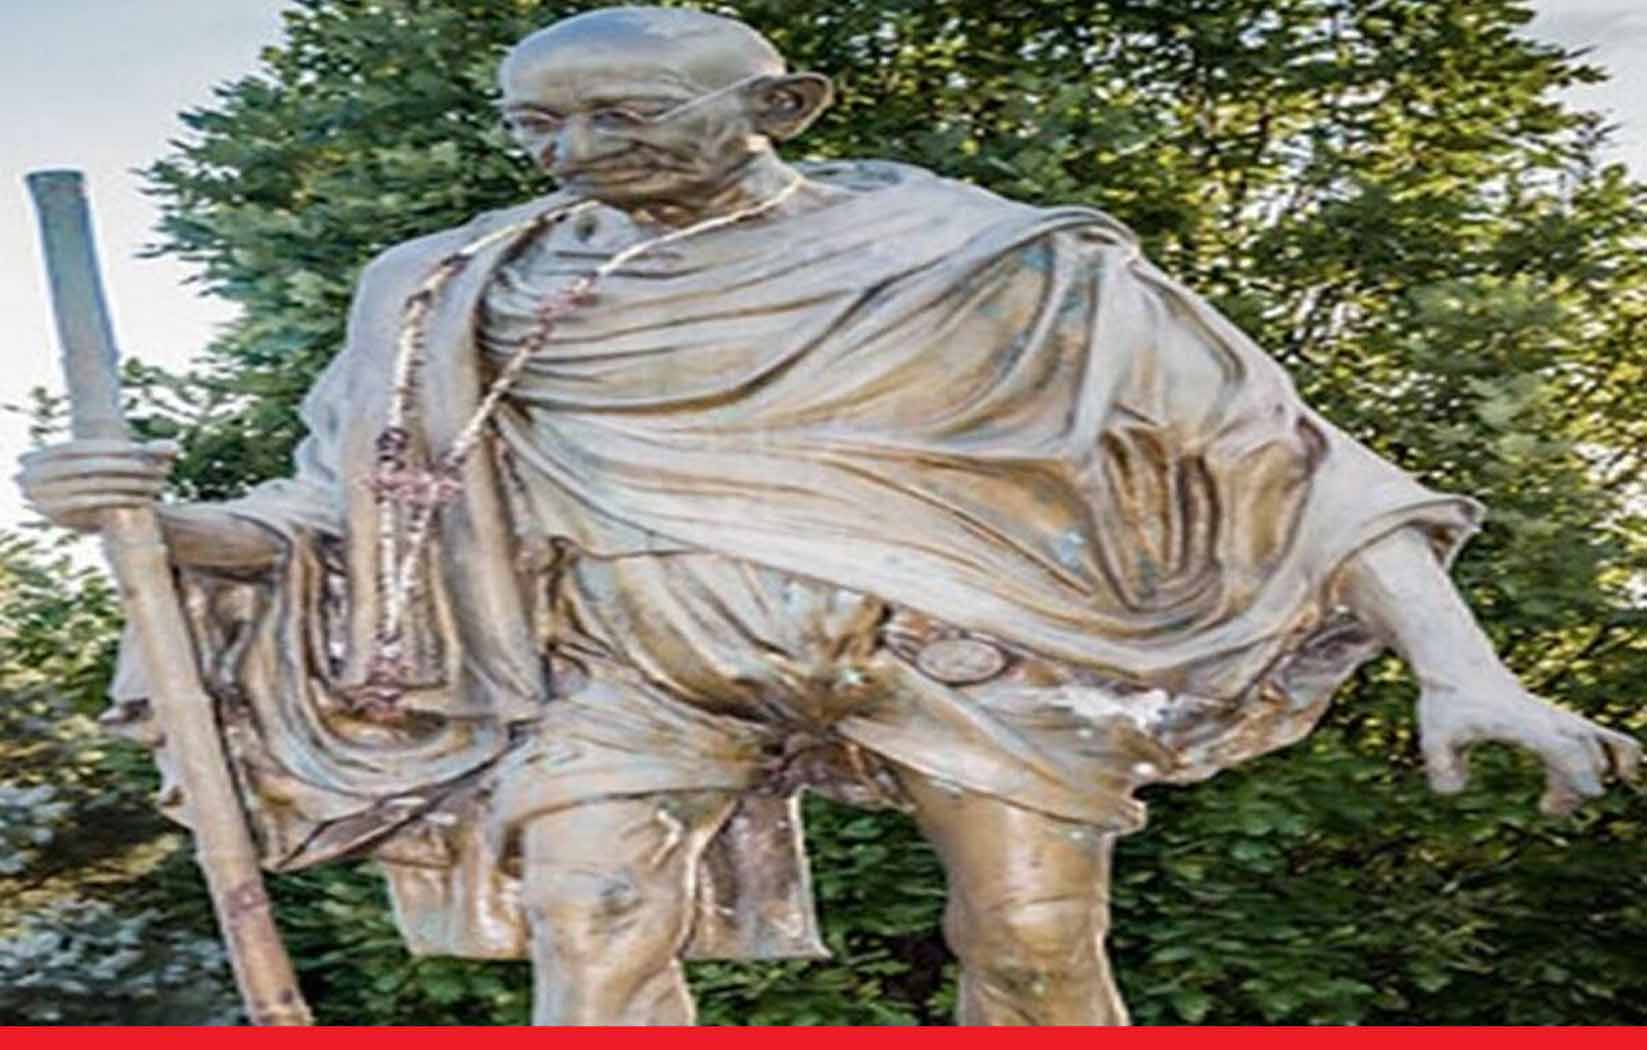 कनाडाः महात्मा गांधी की प्रतिमा को किया क्षतिग्रस्त, भारत ने घृणित कृत्य बताया, सख्त कार्रवाई की मांग